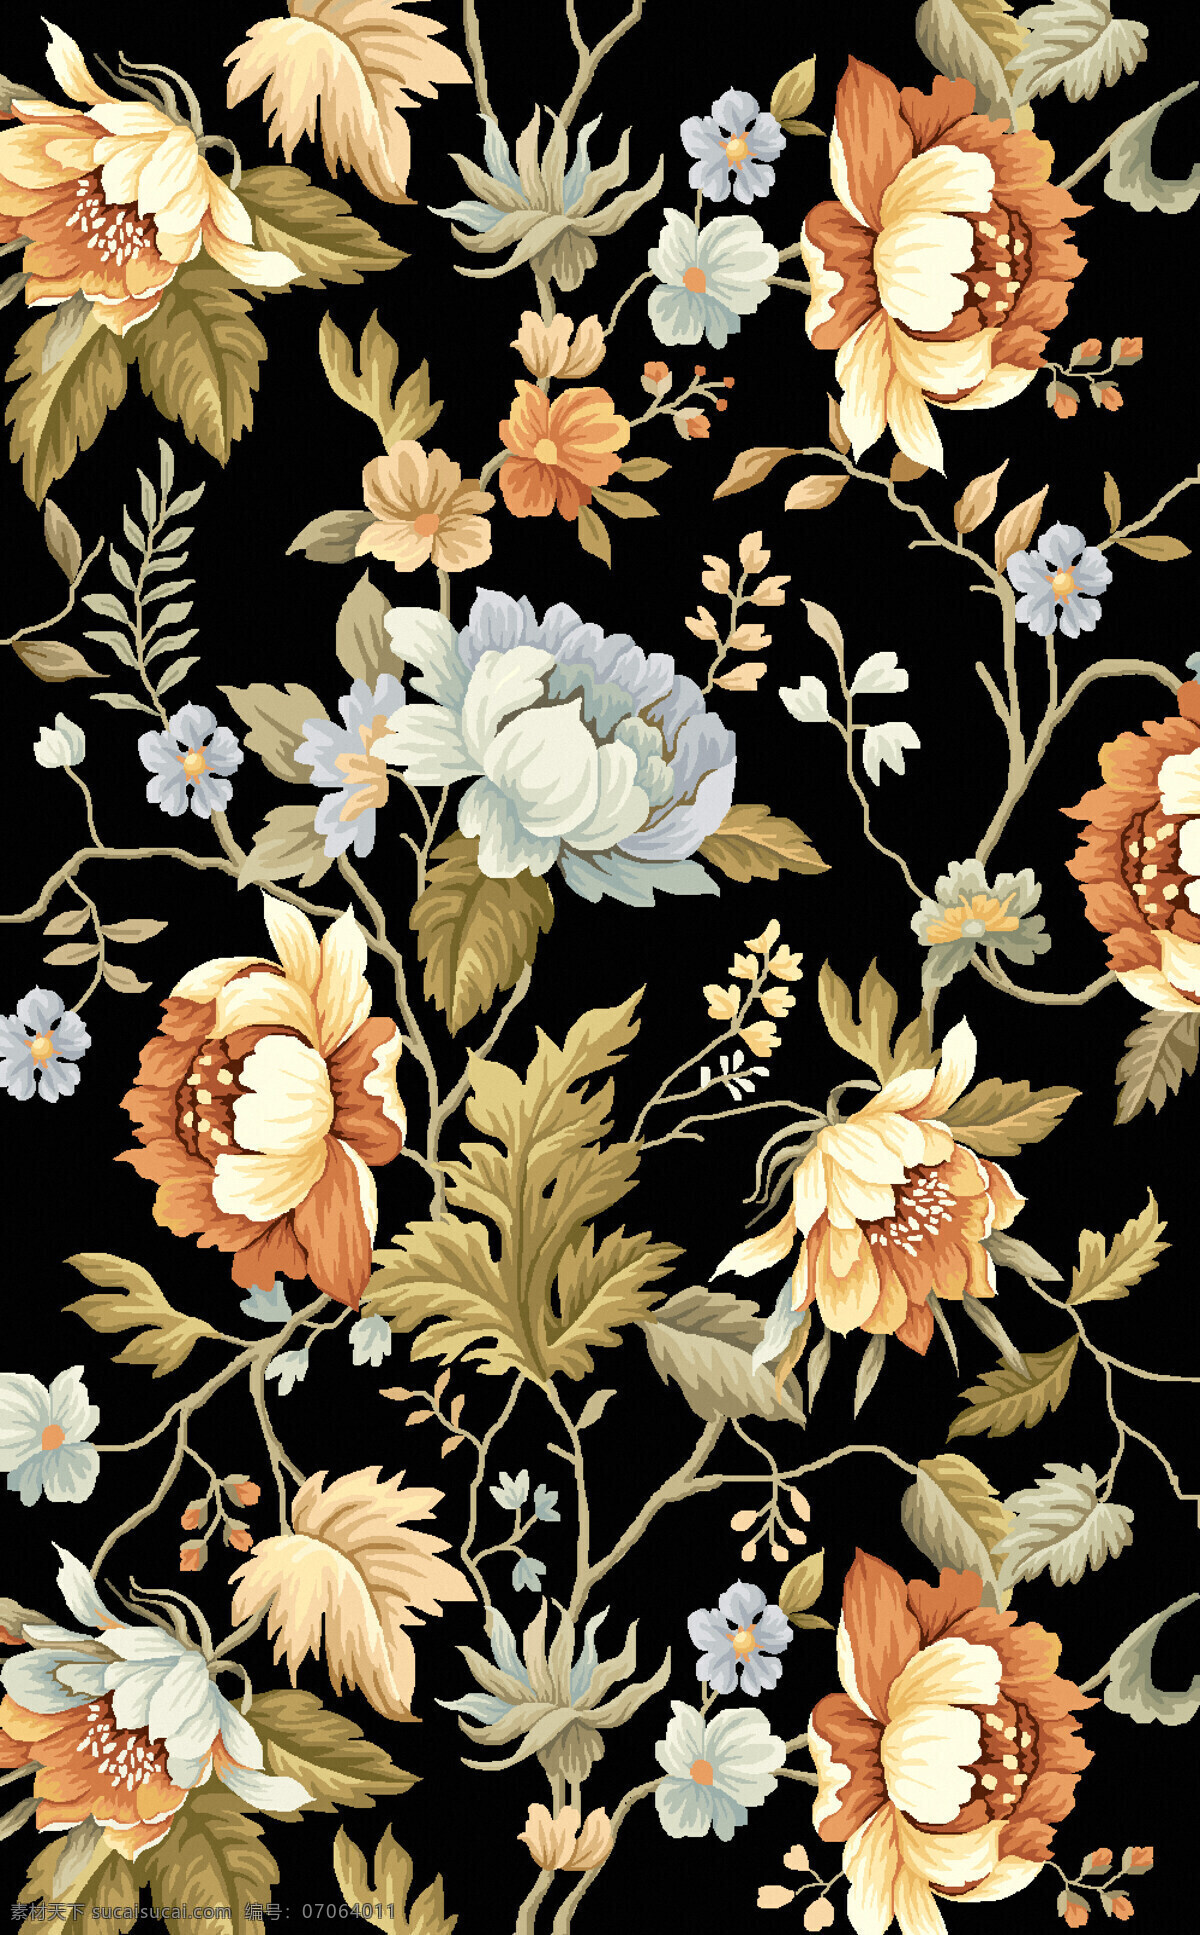 藤类花卉植物 纺织面料 沙发布艺 纹饰 纹样 地毯图案设计 花卉植物围边 满铺 底纹边框 背景底纹